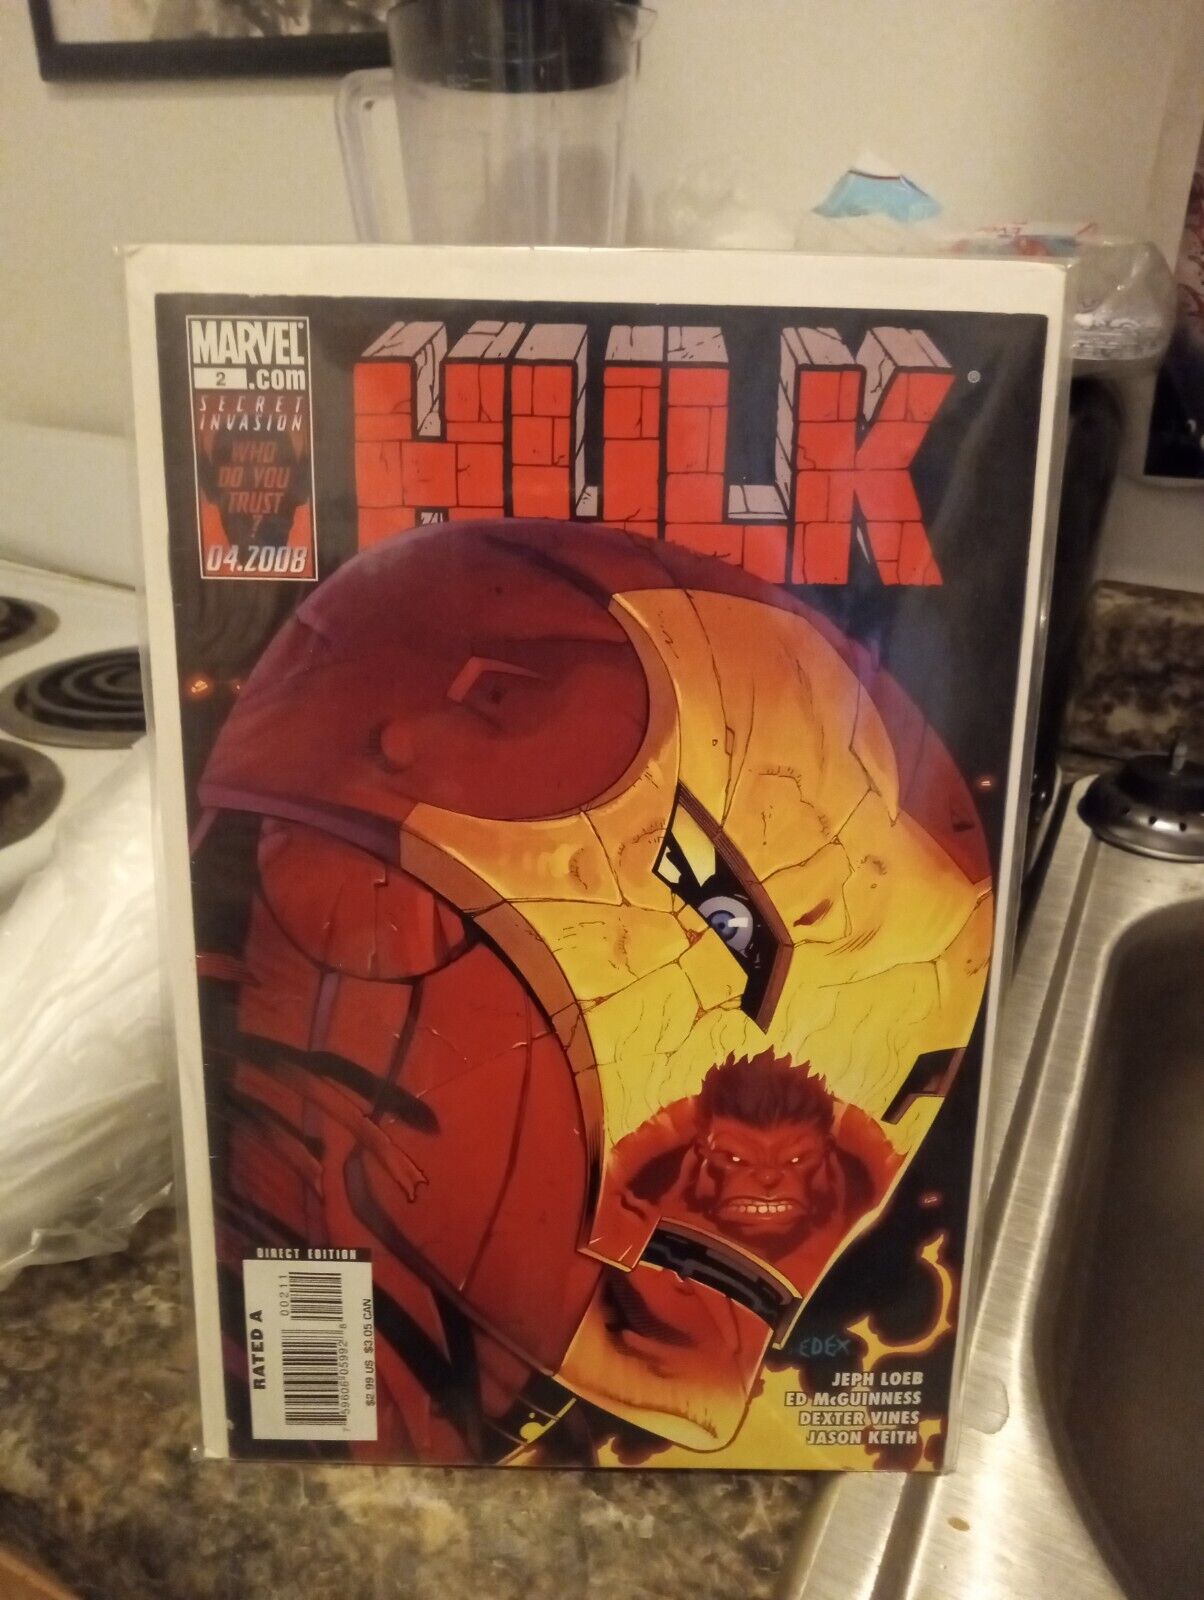 The Hulk #2 (Marvel Comics April 2008)